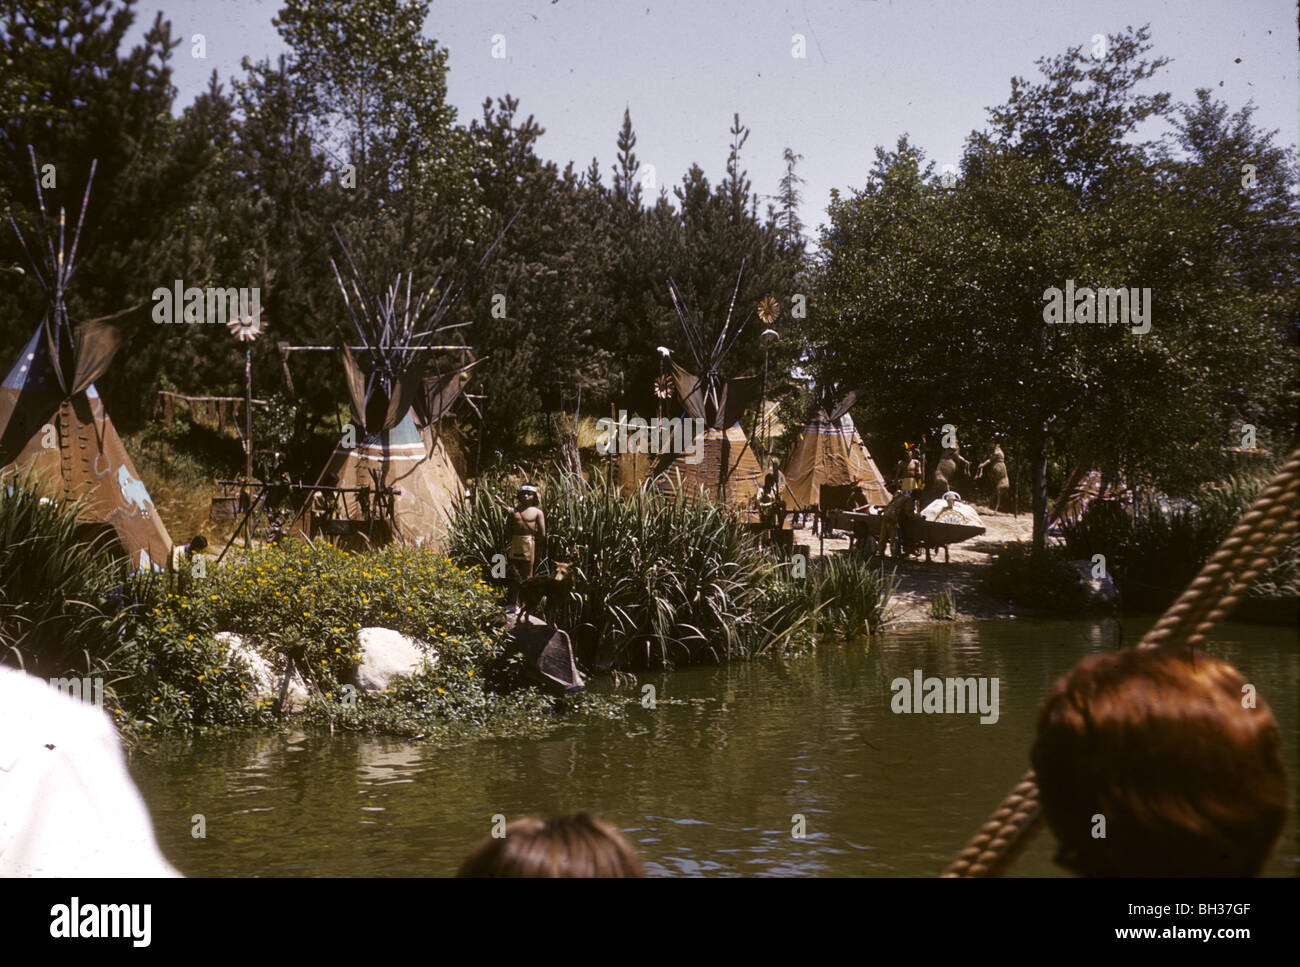 Postmoderne Simulacra von einem Indianer-Camp. Disneyland Urlaub Kodachromes von 1962. Stockfoto